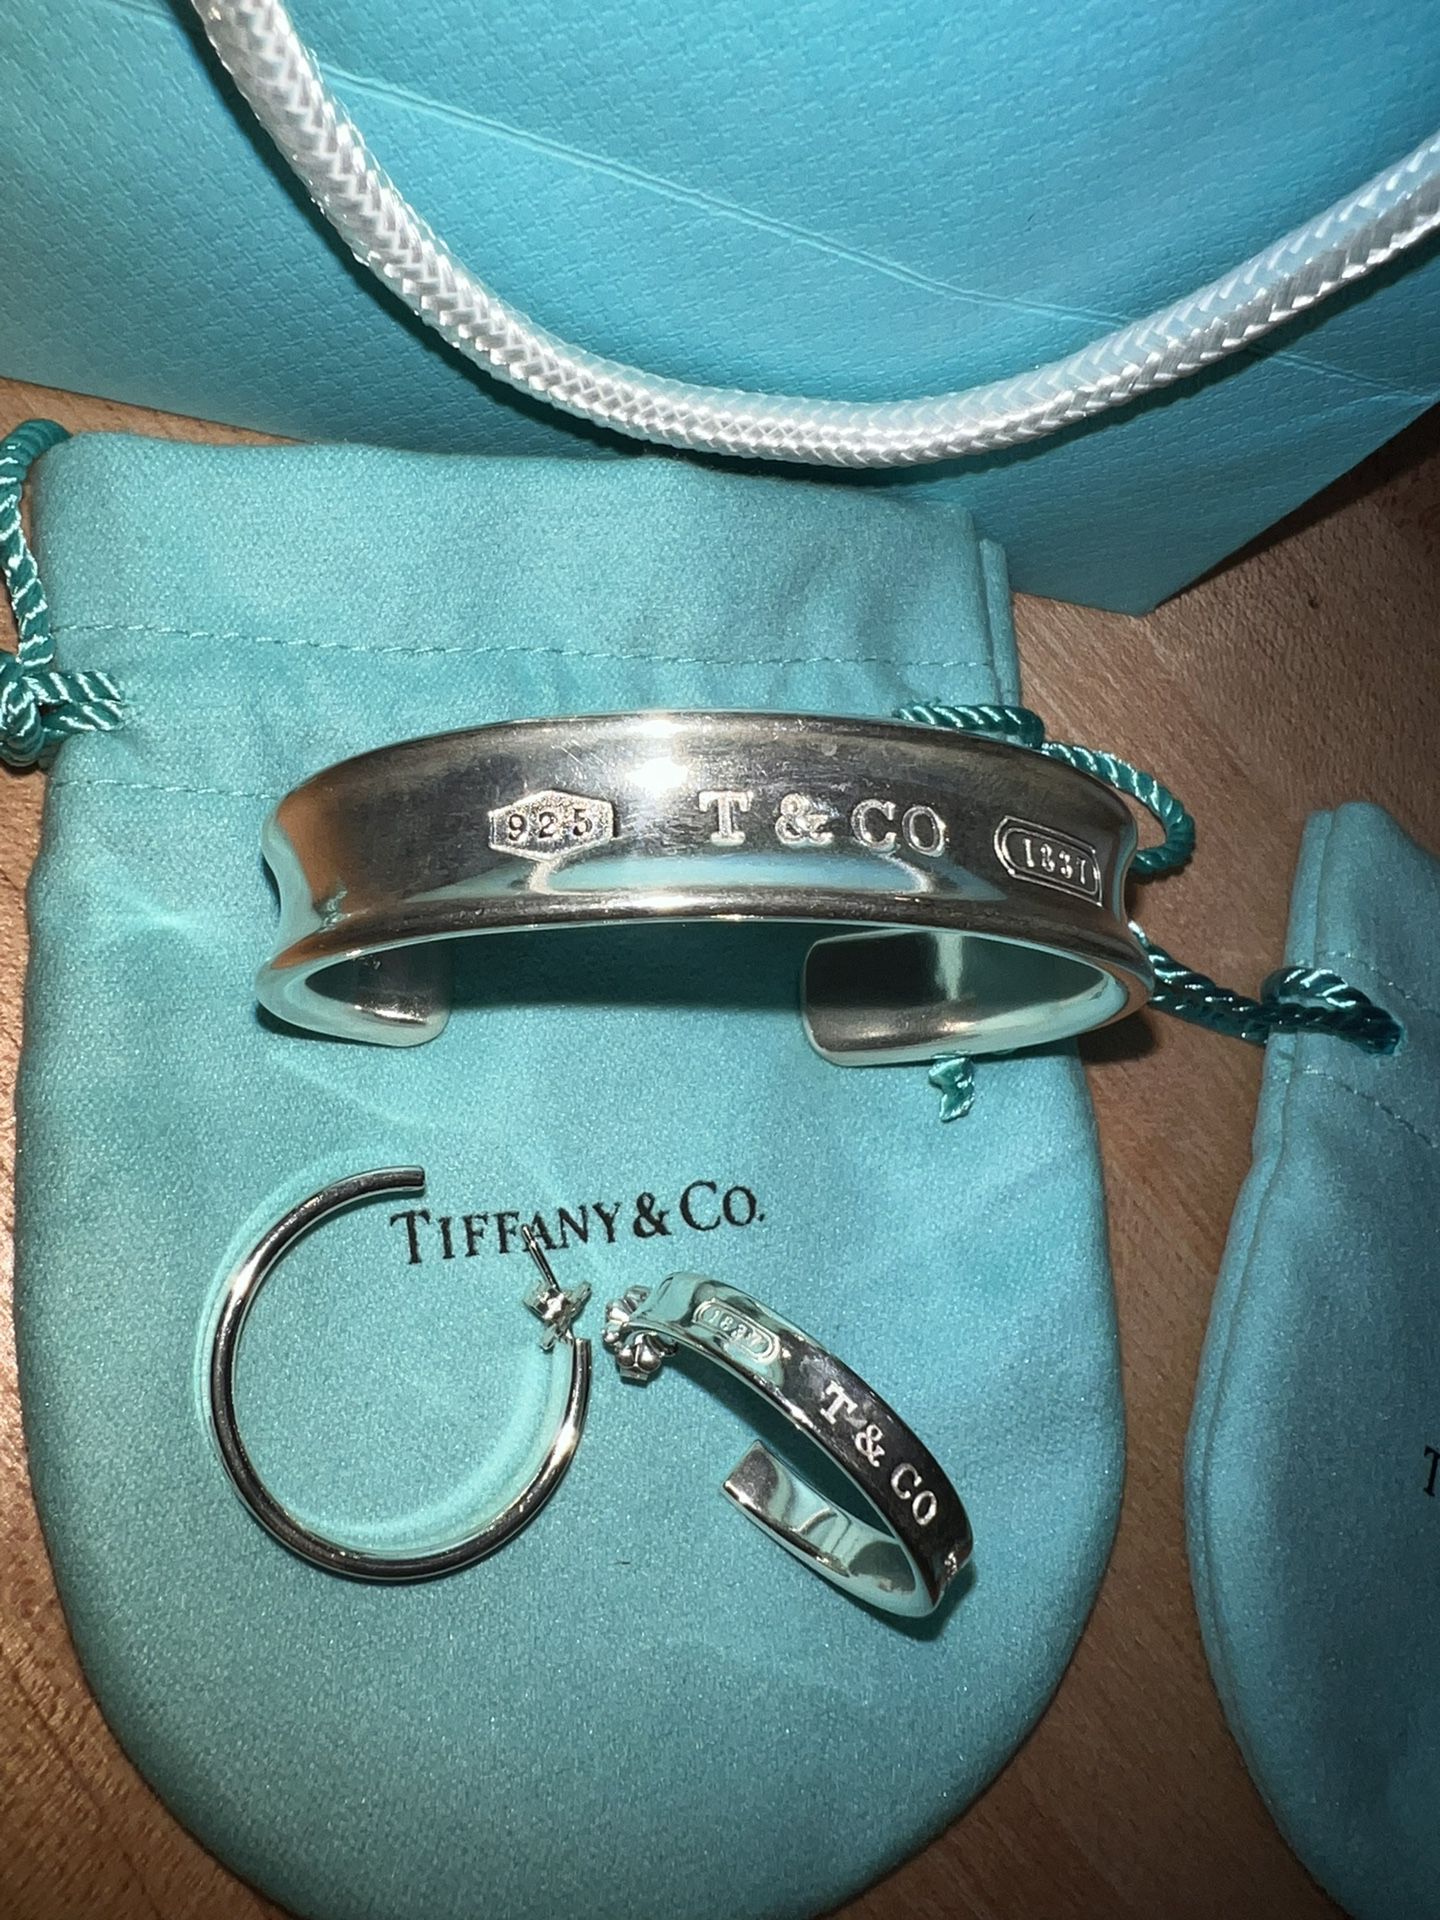 Tiffany Cuff Bracelet & Earrings Hoop Like New Set $400 OBO